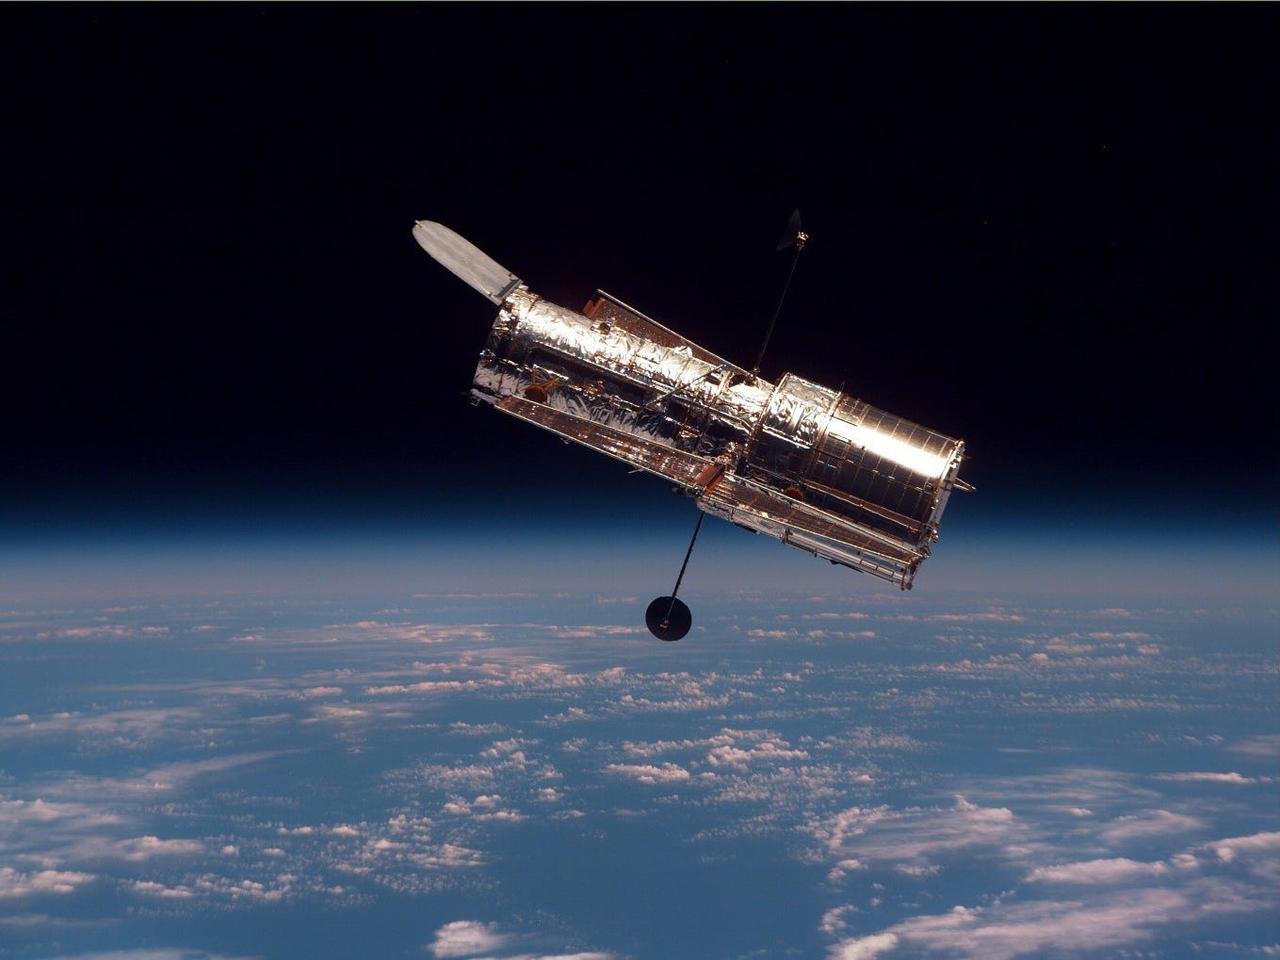 ハッブル宇宙望遠鏡は、地球を周回しながら宇宙の姿を詳細に捉えている。